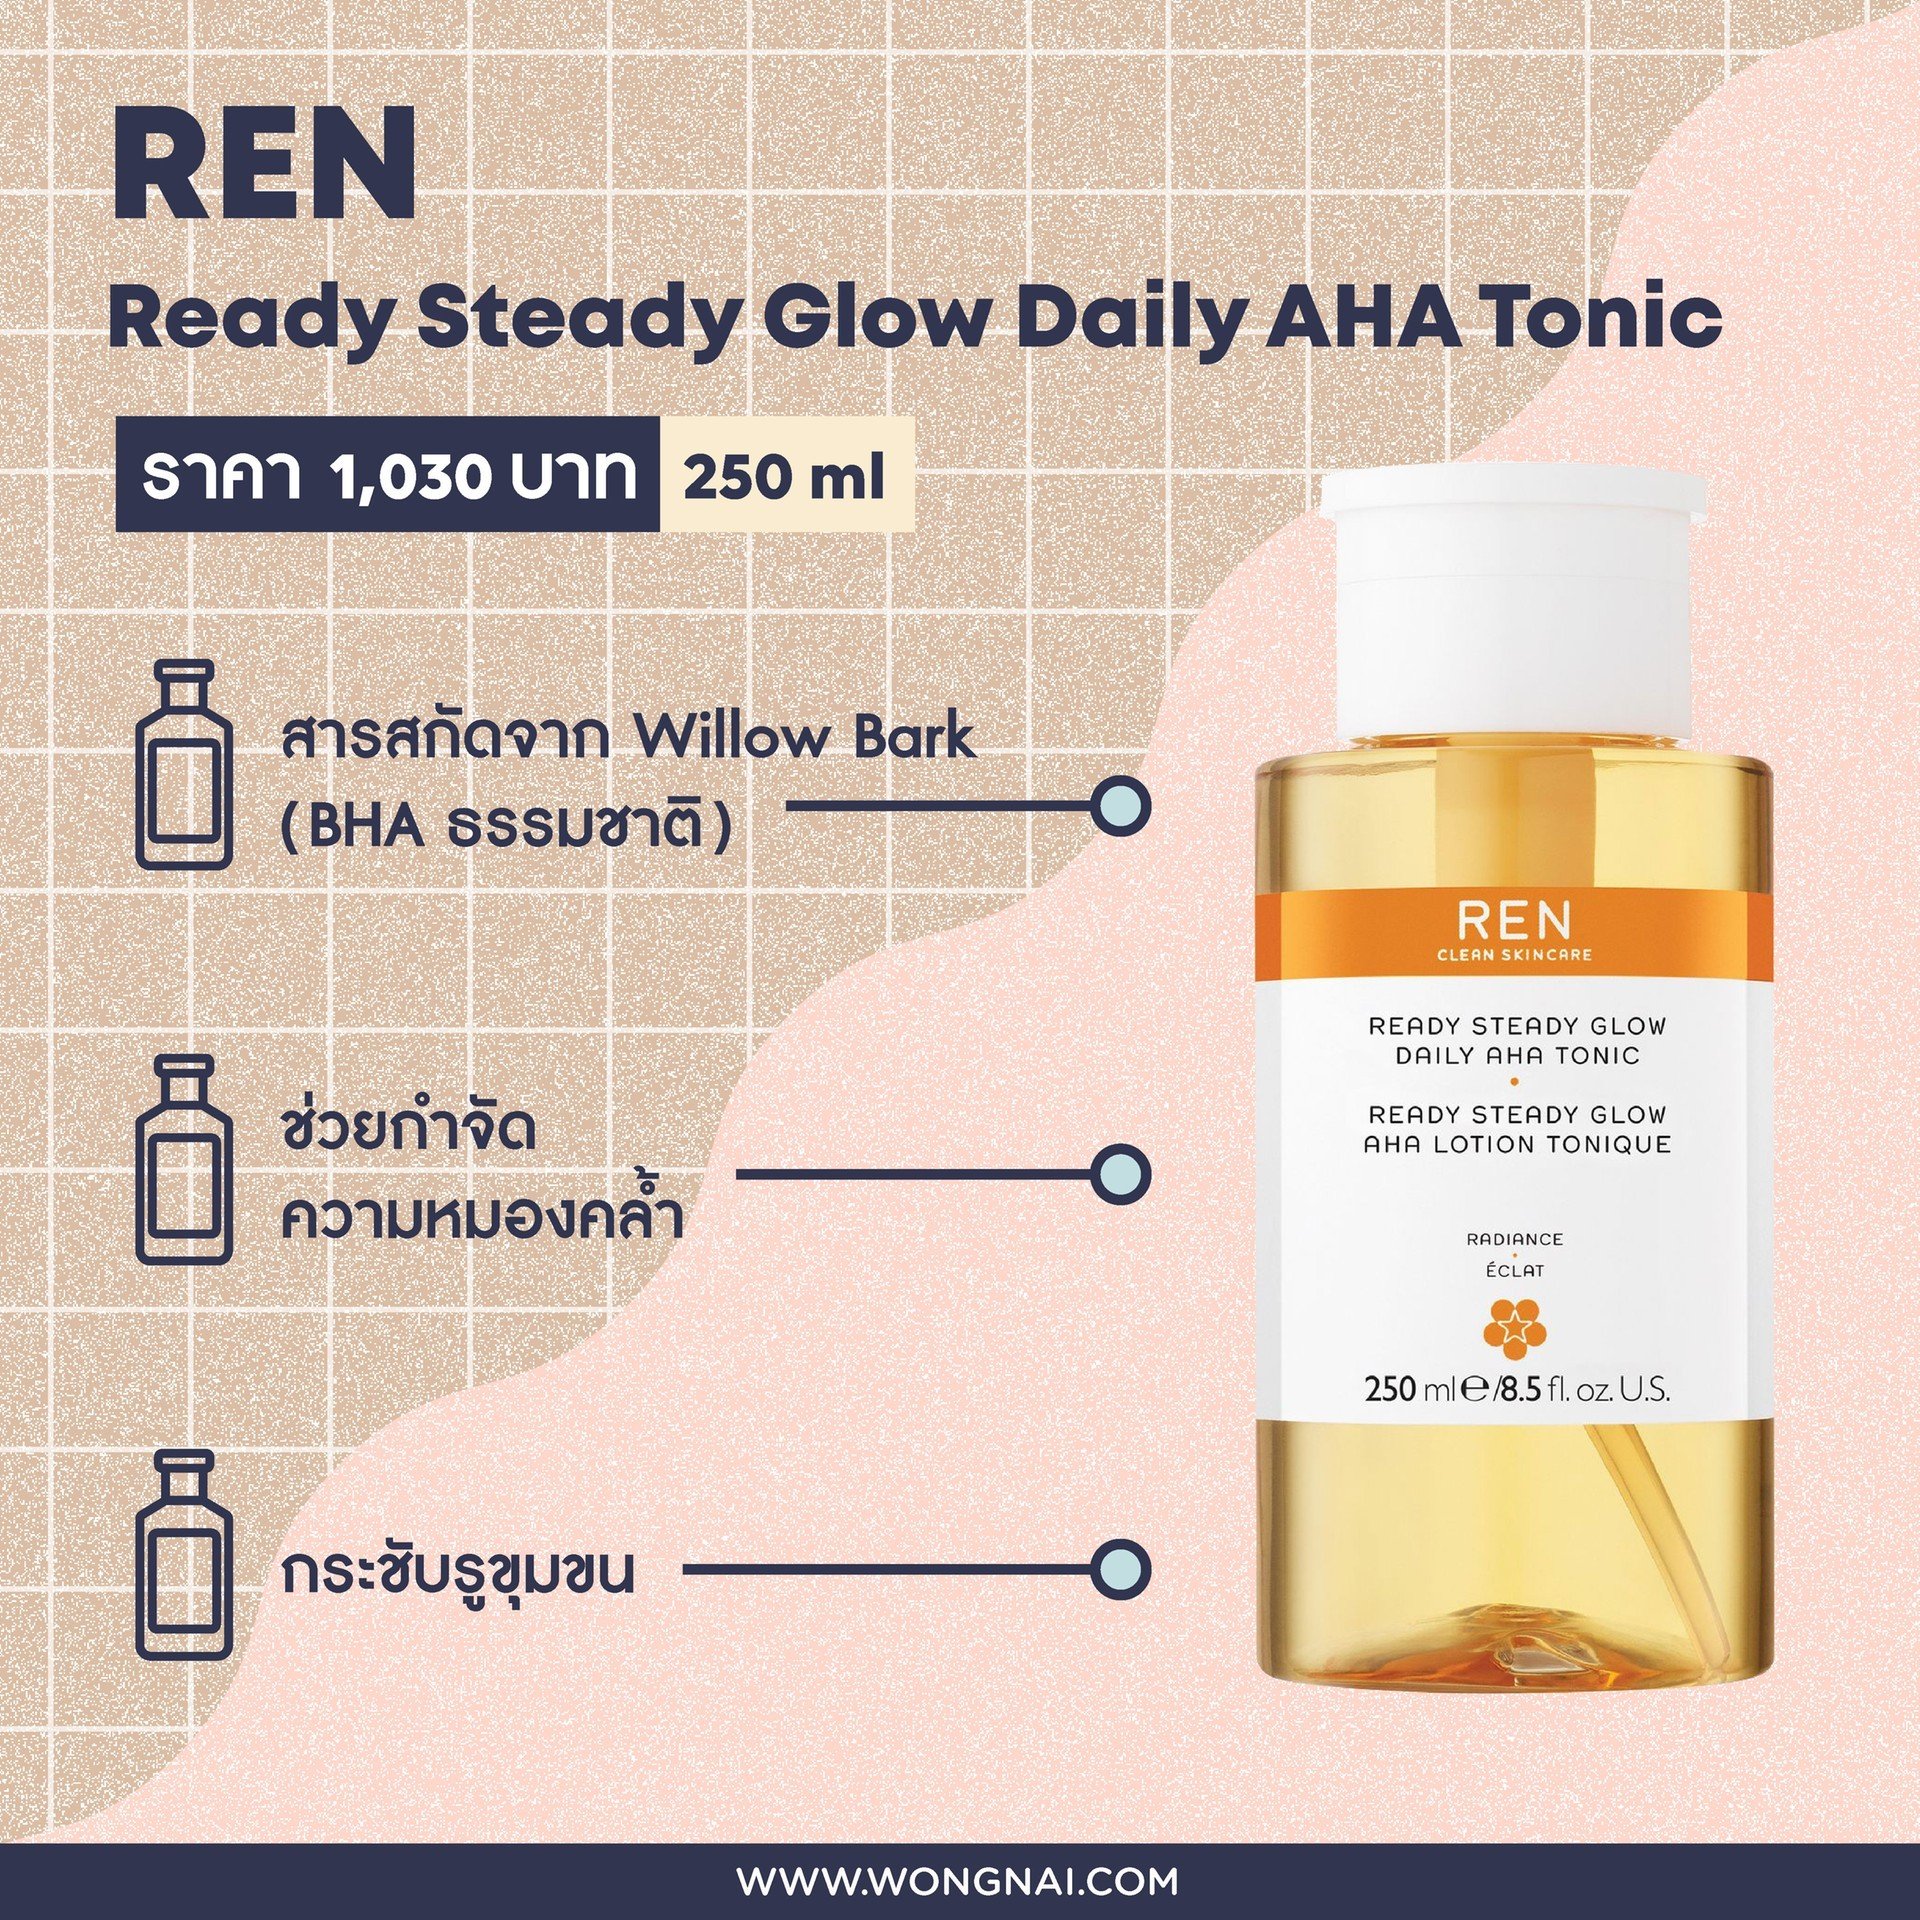 โทนเนอร์ REN Ready Steady Glow Daily AHA Tonic